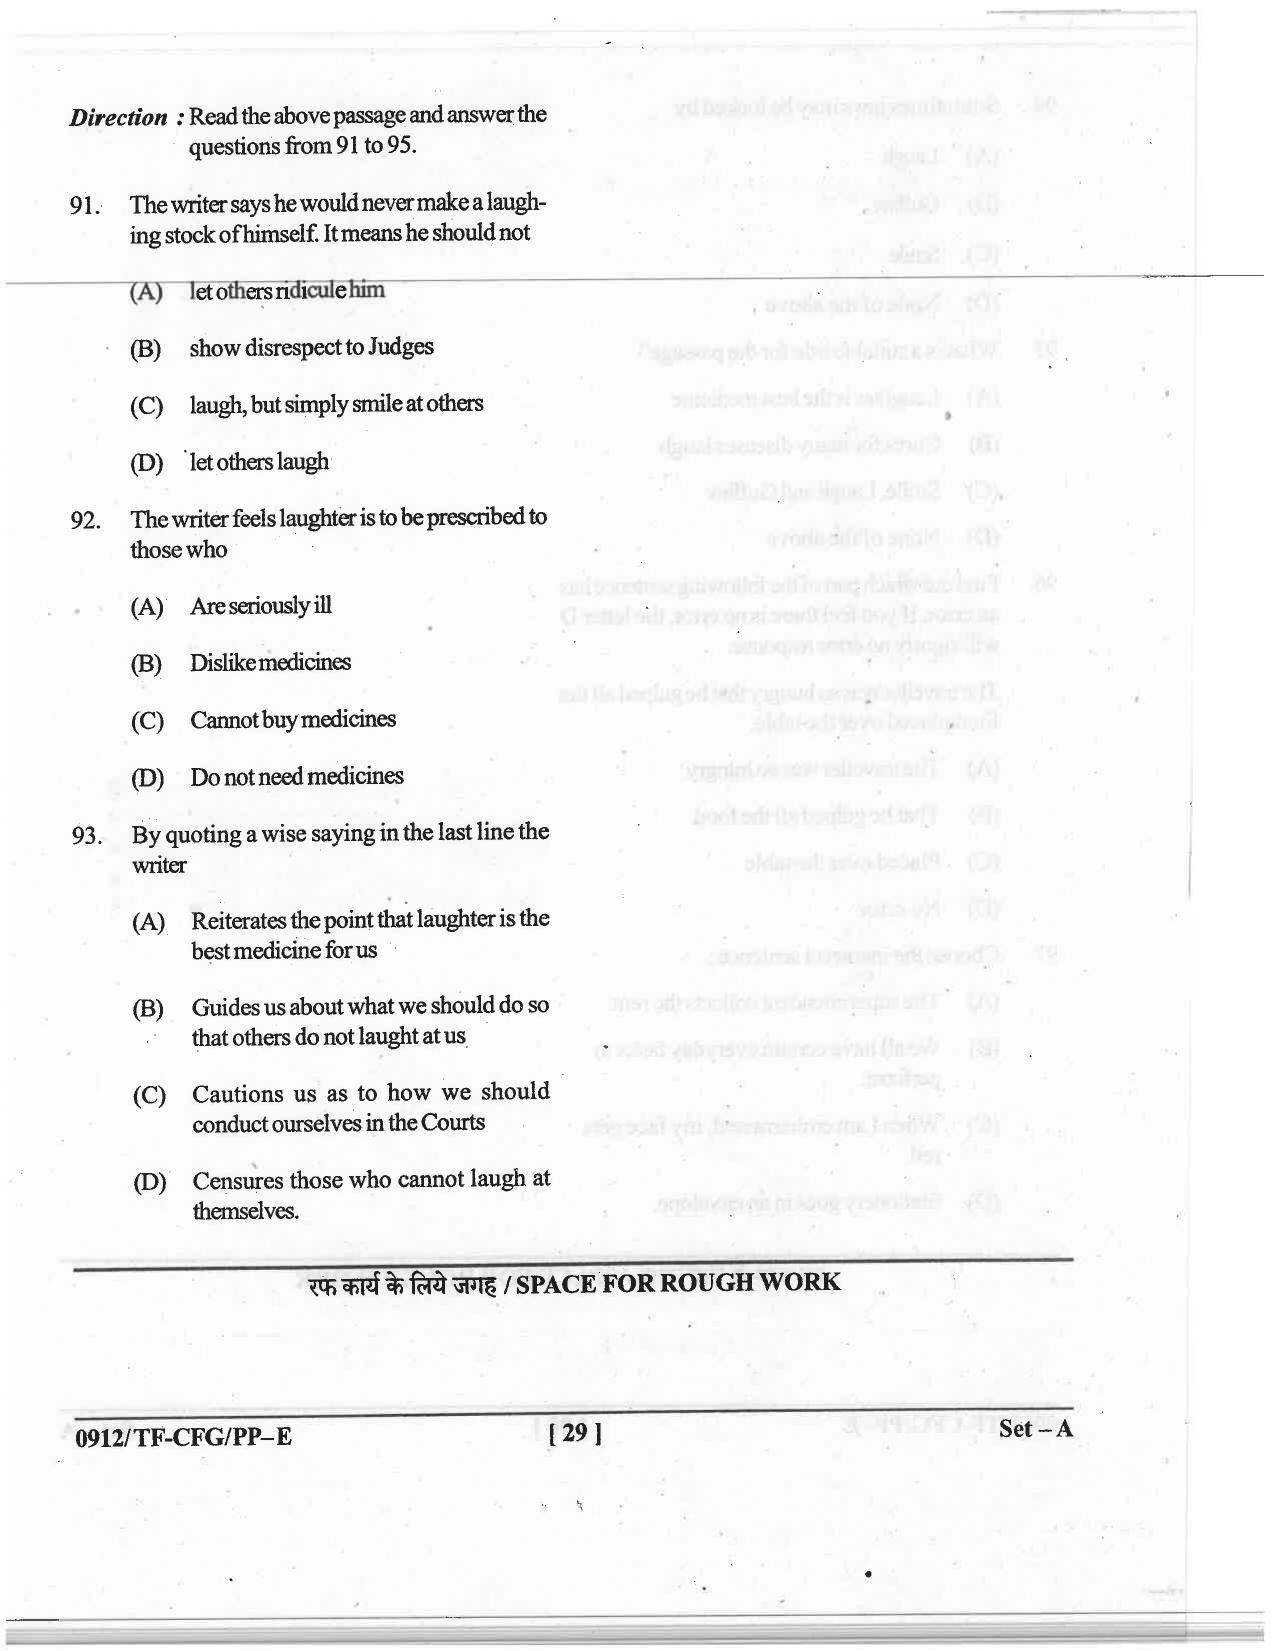 CG Pre B.A B.Ed / Pre B.Sc. B.Ed 2019 Question Paper - Page 29